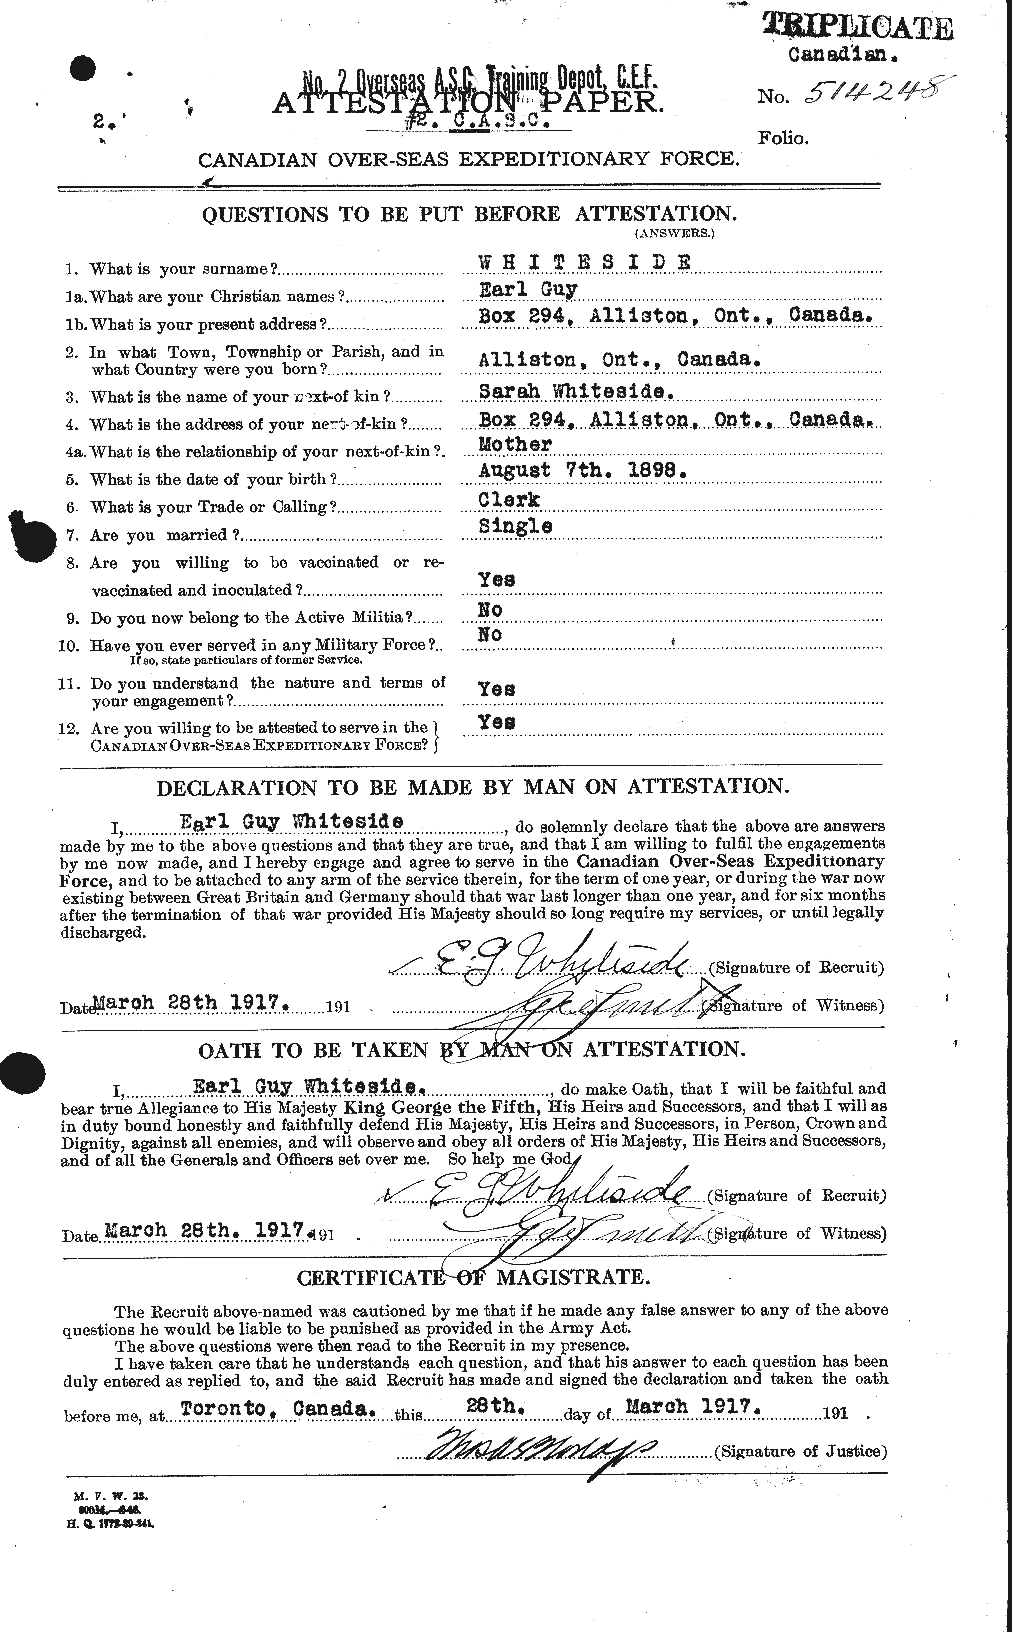 Dossiers du Personnel de la Première Guerre mondiale - CEC 671229a